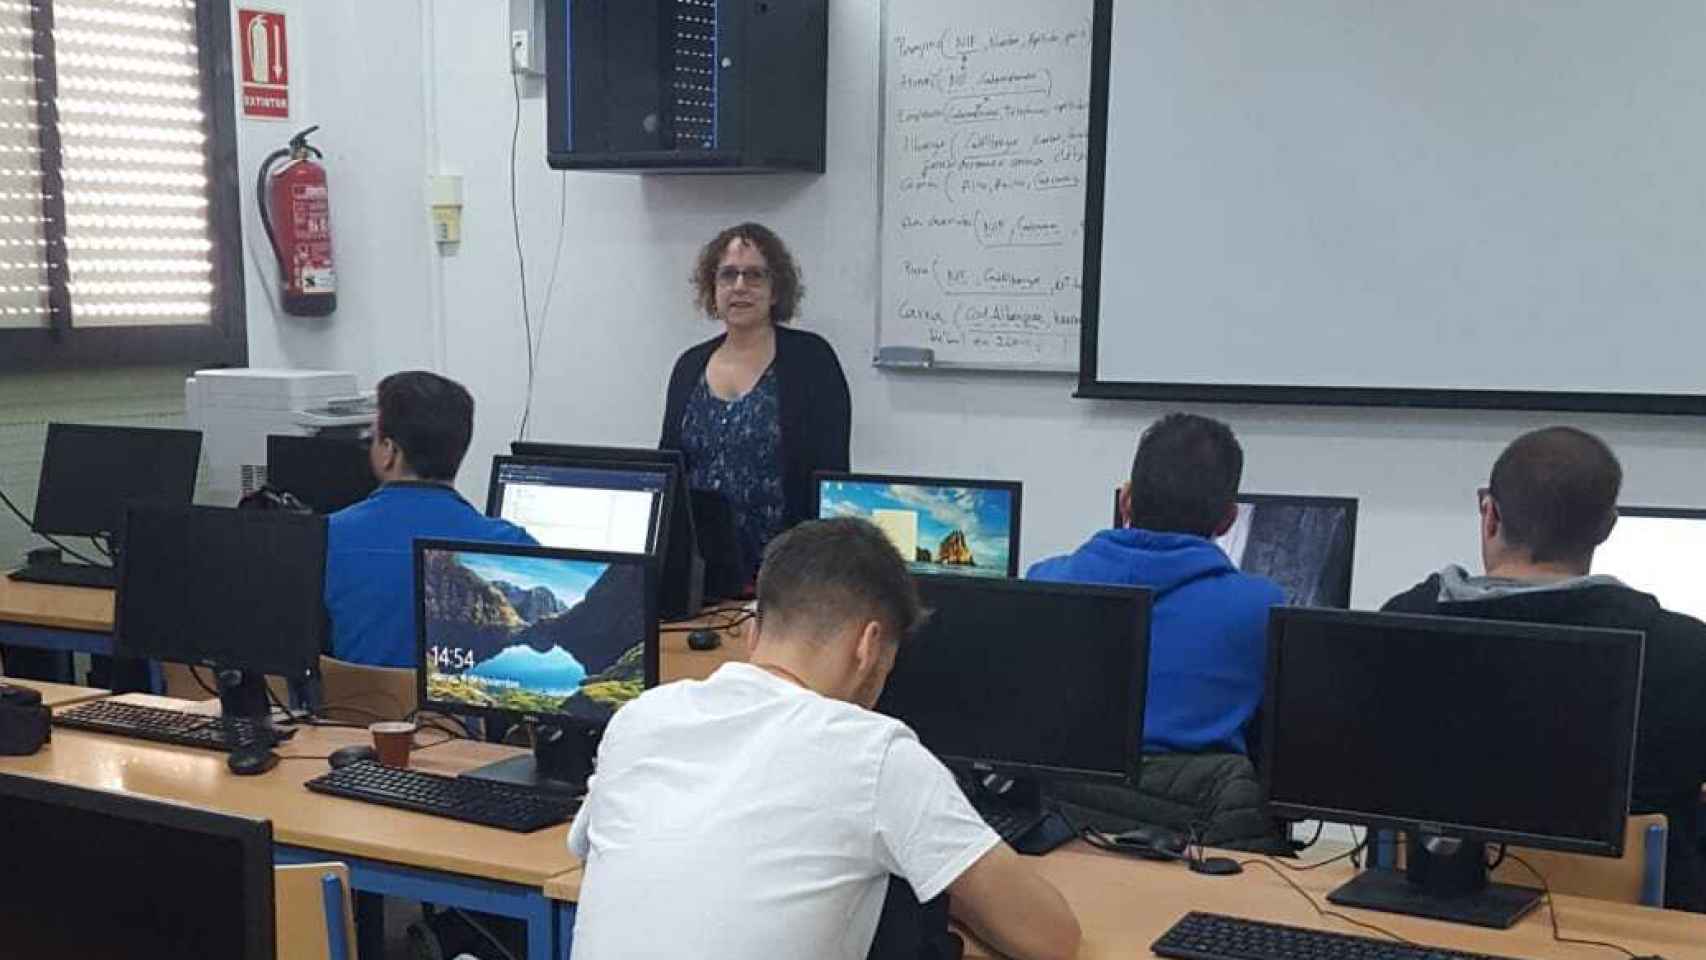 Inmaculada imparte clase de Informática a sus alumnos en el instituto.